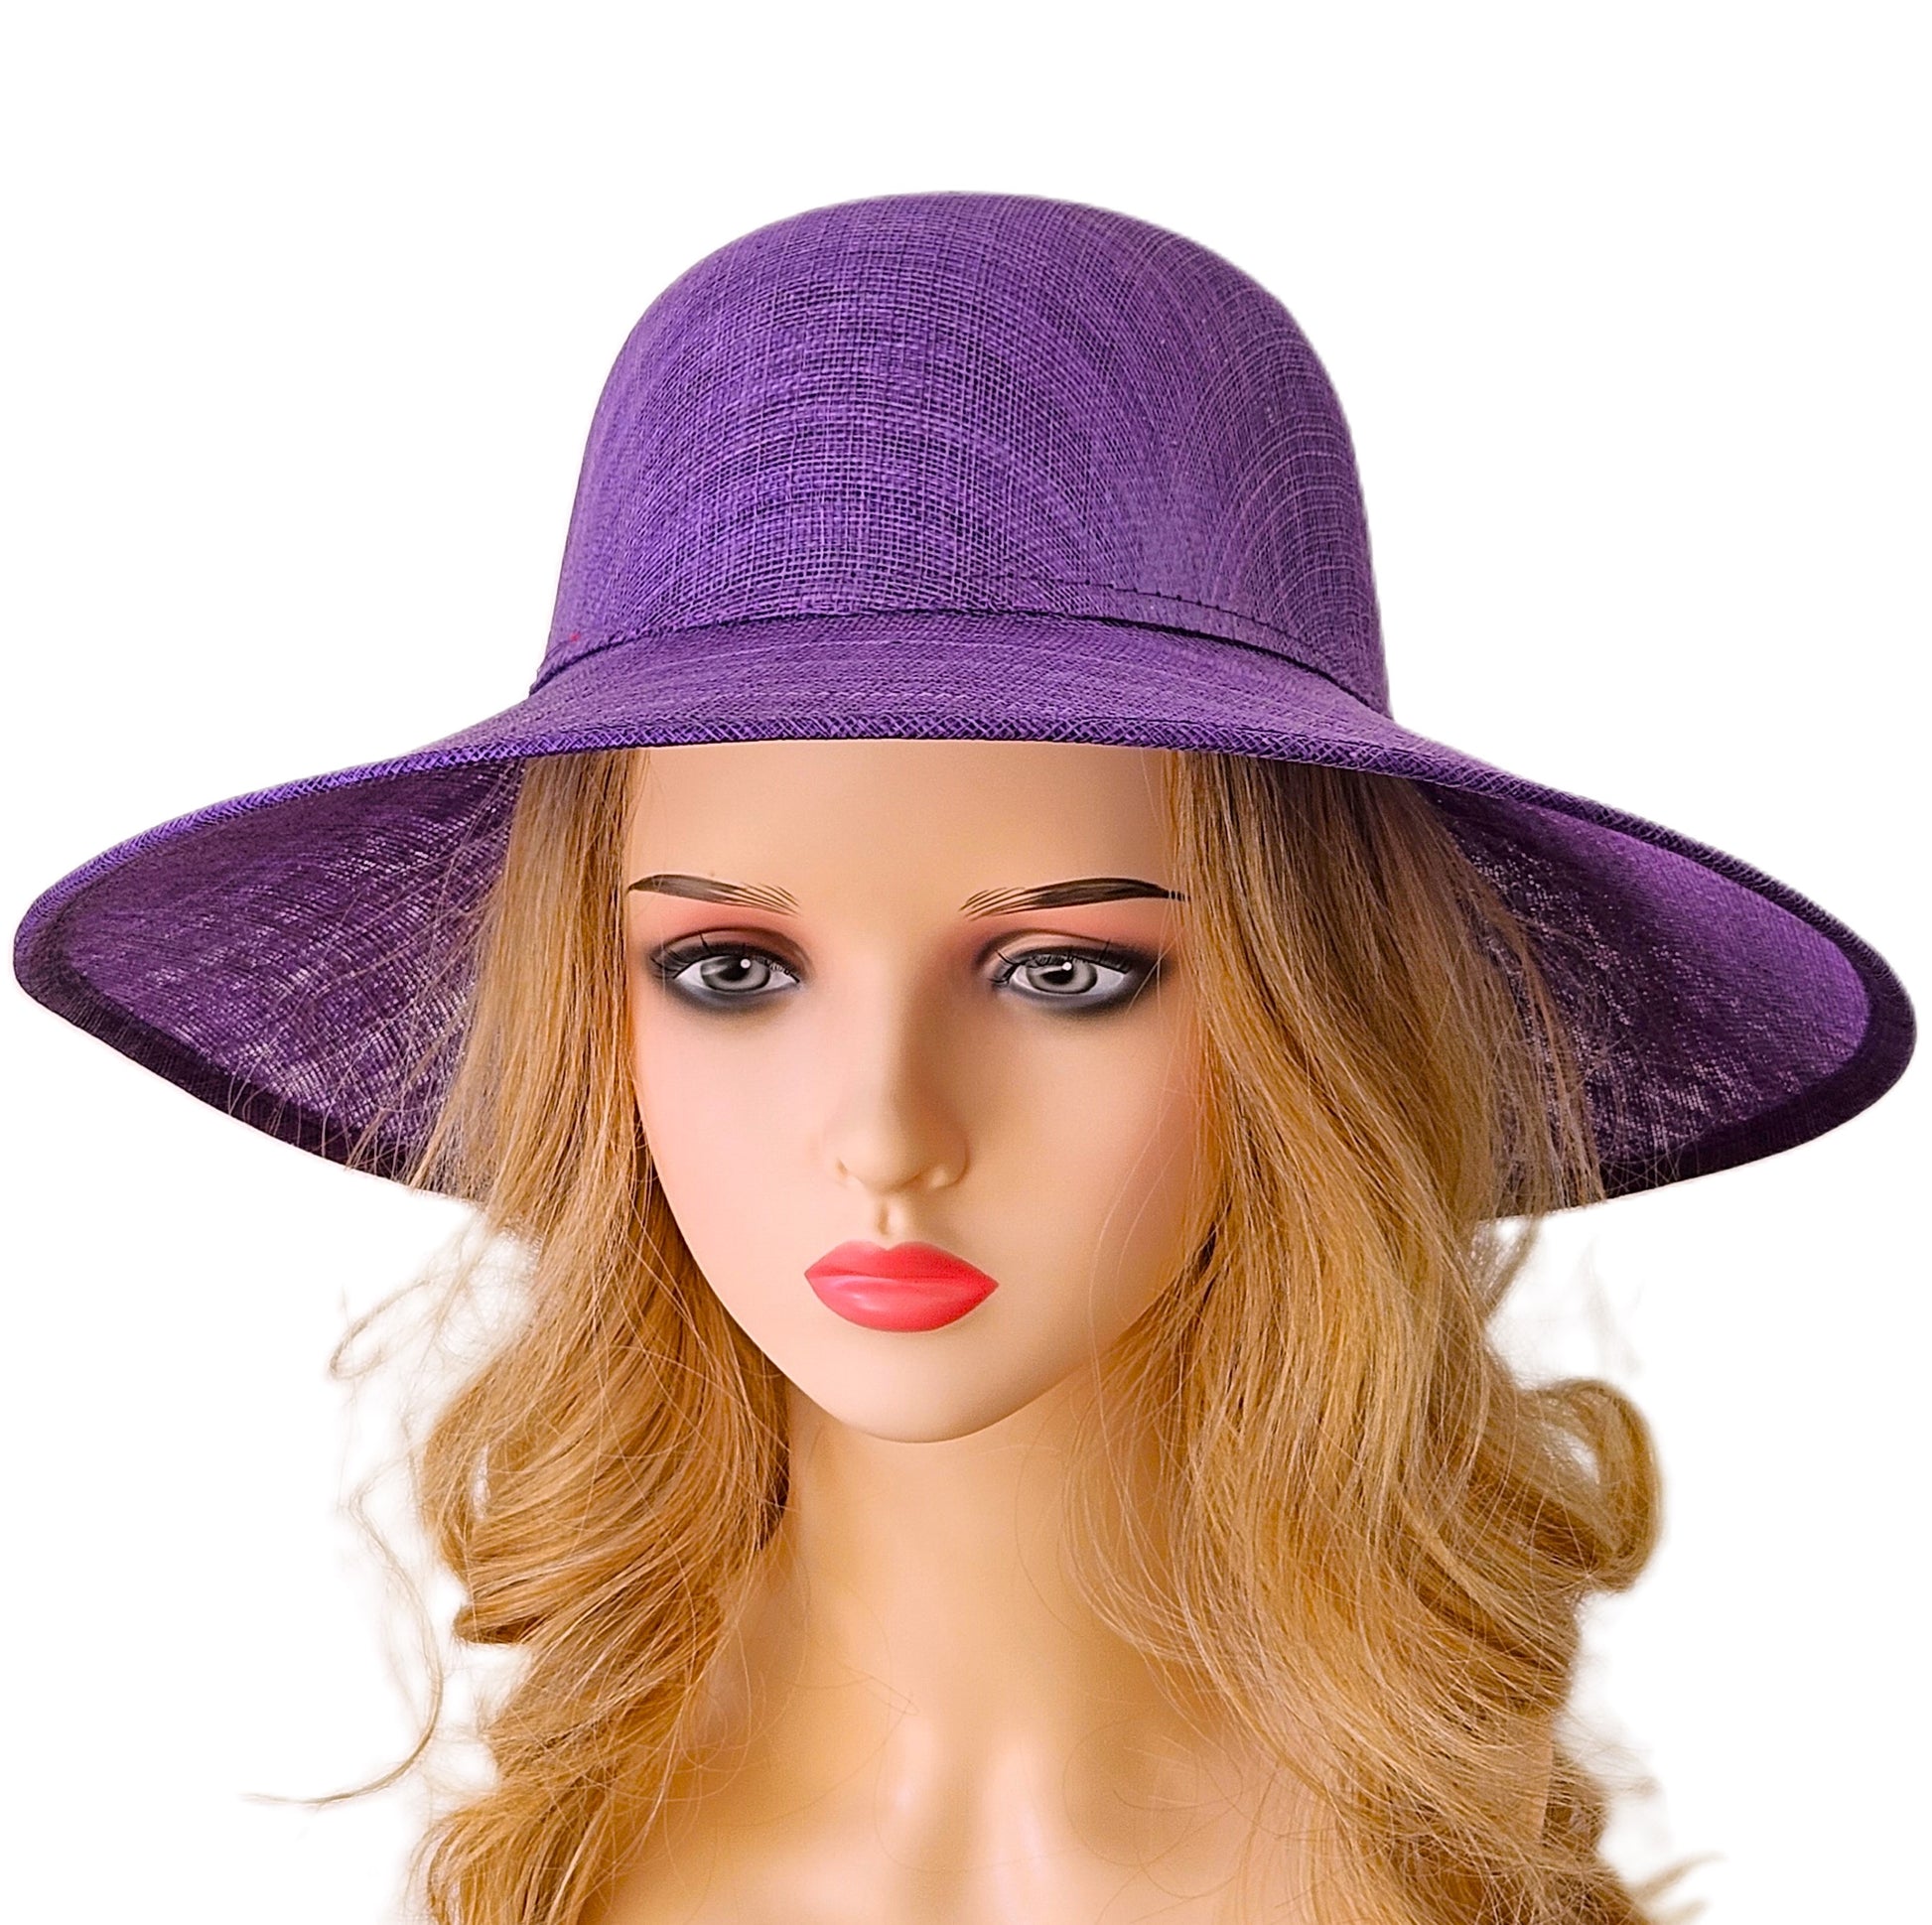 Plain purple hat